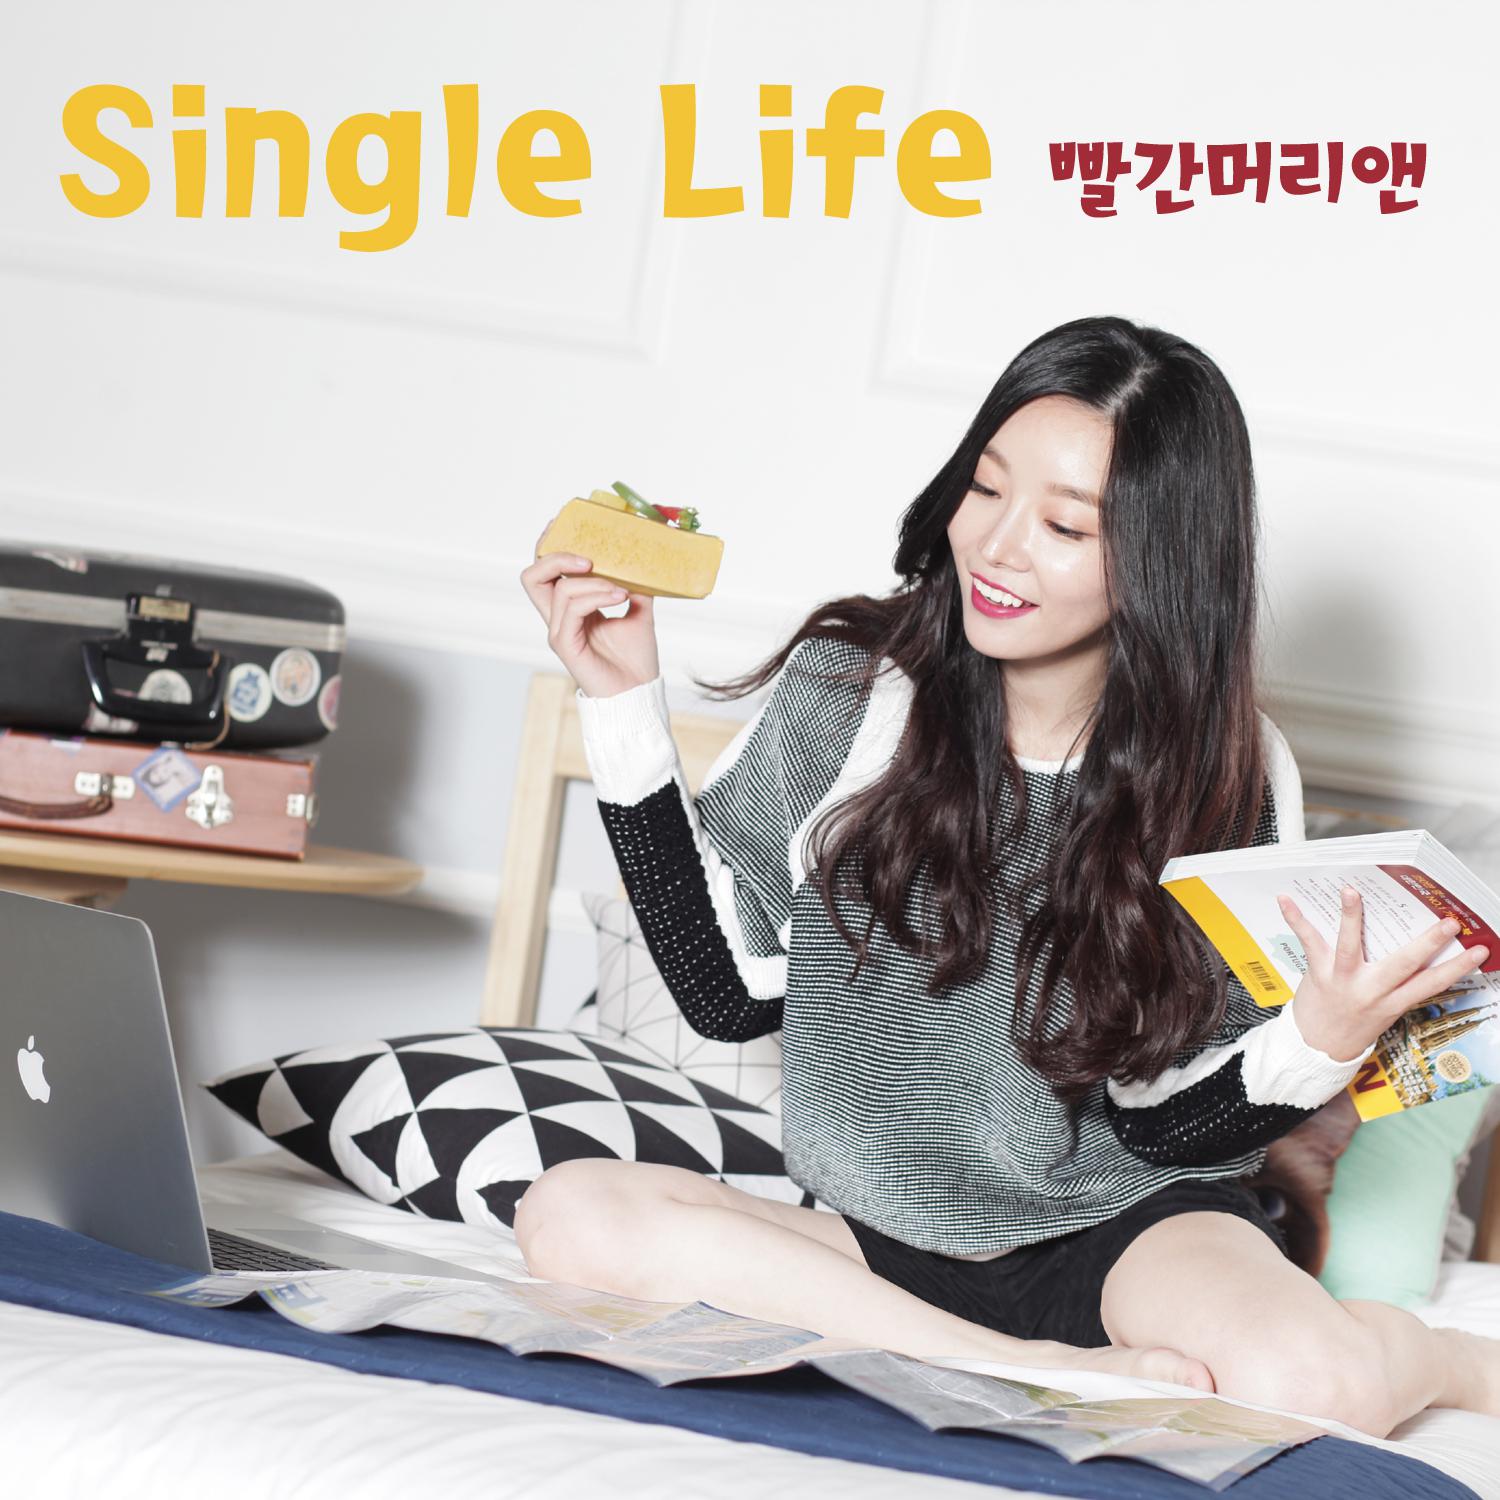 歌 曲 名(Single Life).由 红 发 安 演 唱.收 录 于(Single Life)专 辑 中.(Single Life)下 载.(.....